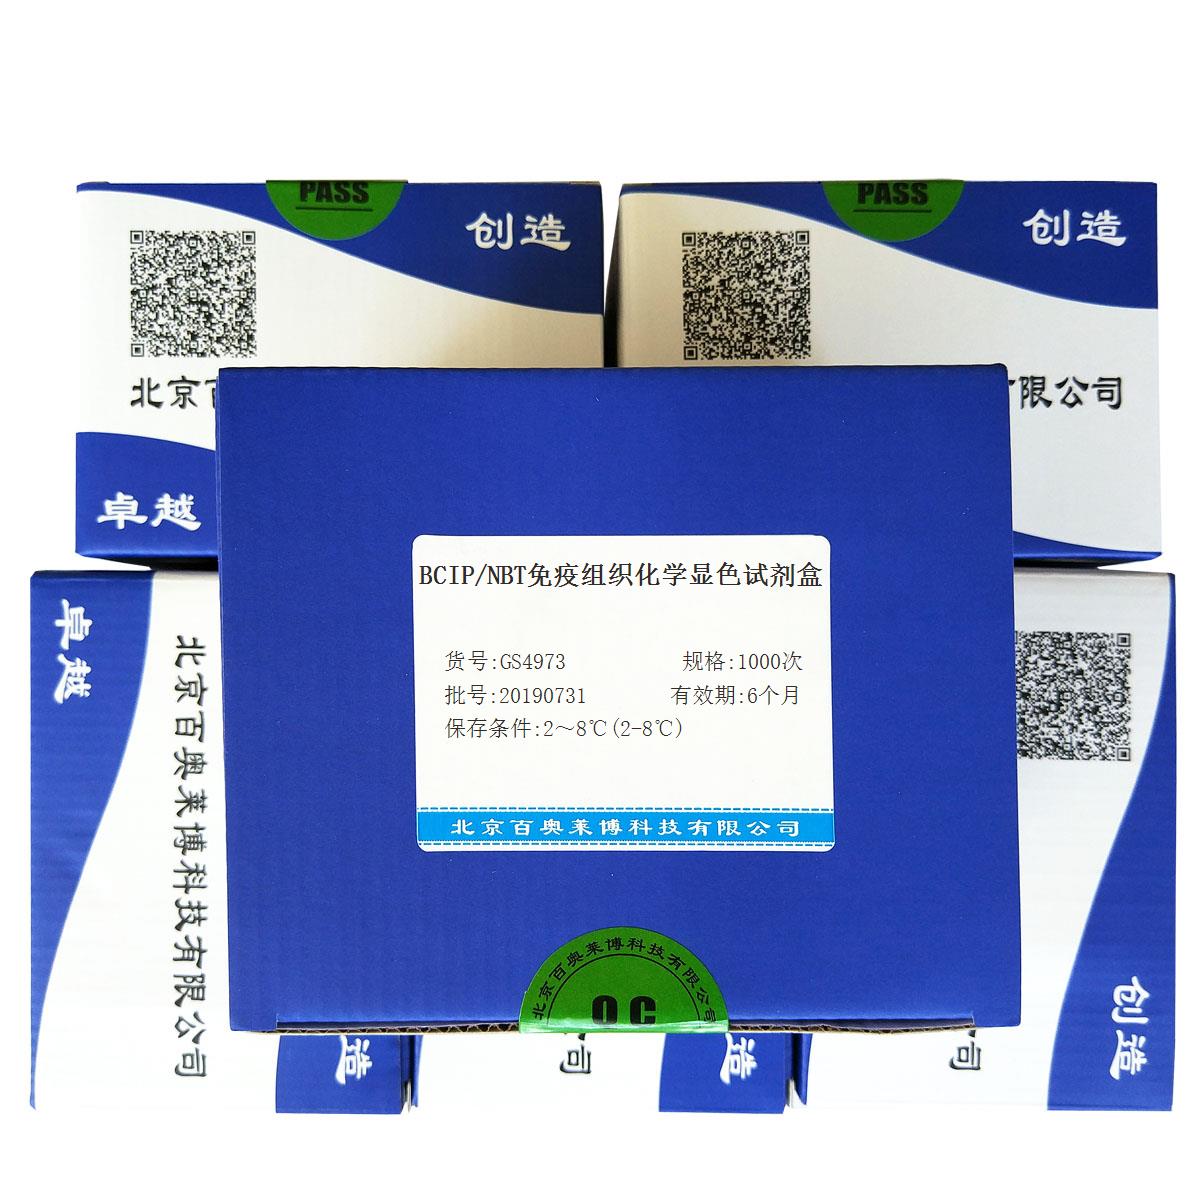 BCIP/NBT免疫组织化学显色试剂盒北京供应商